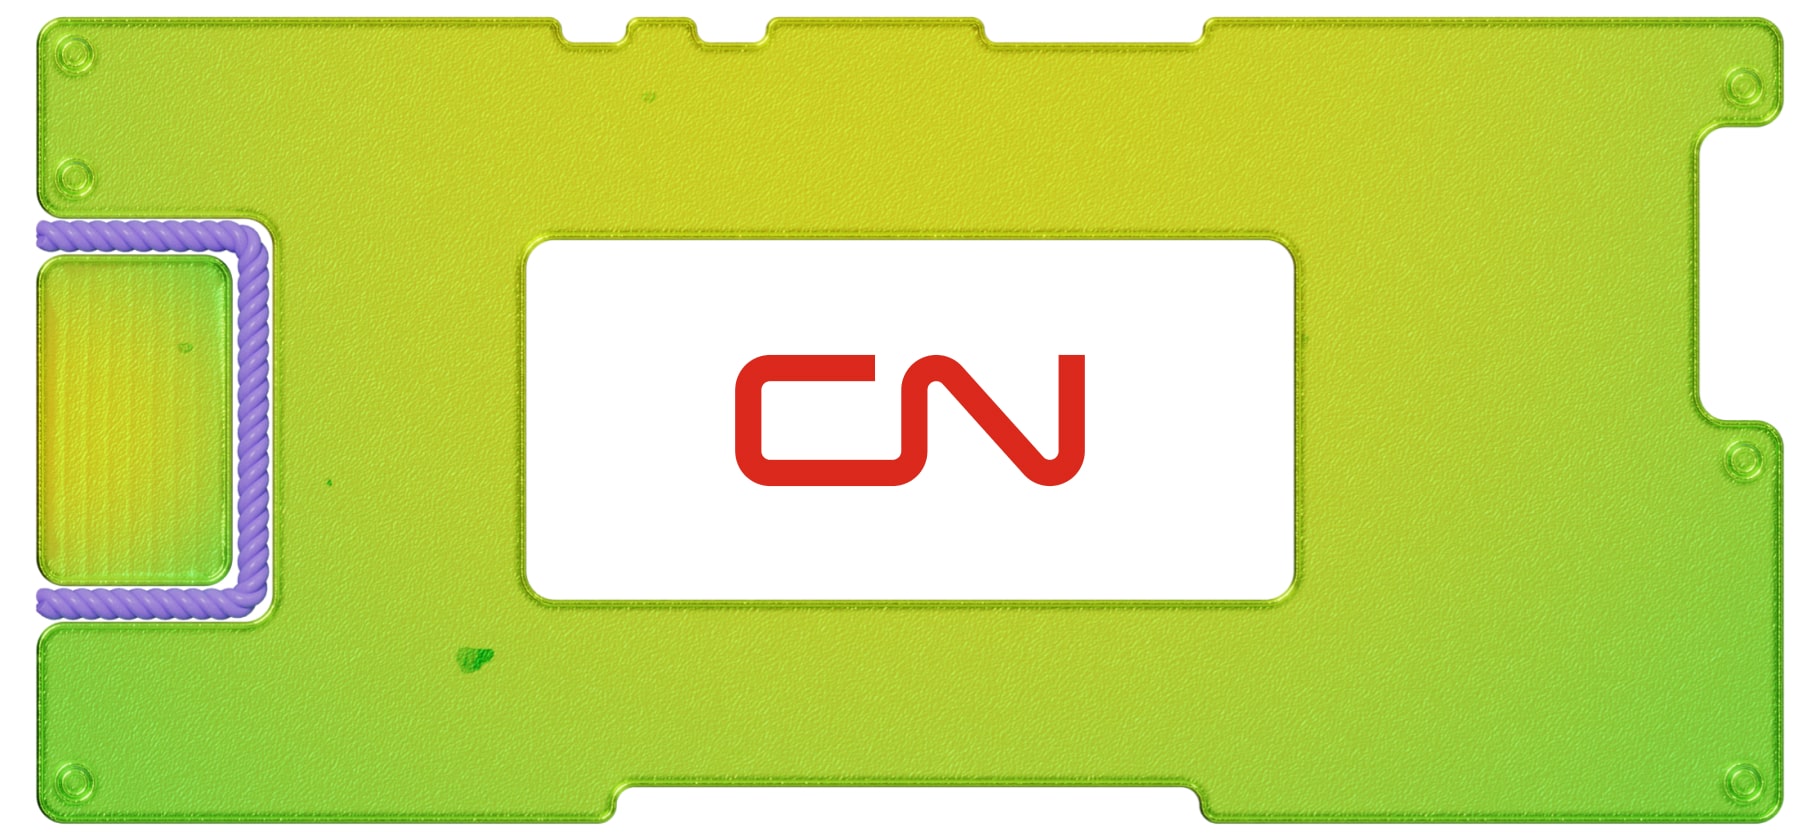 Обзор Canadian National Railway: новый канадский ж/д оператор на СПб-бирже